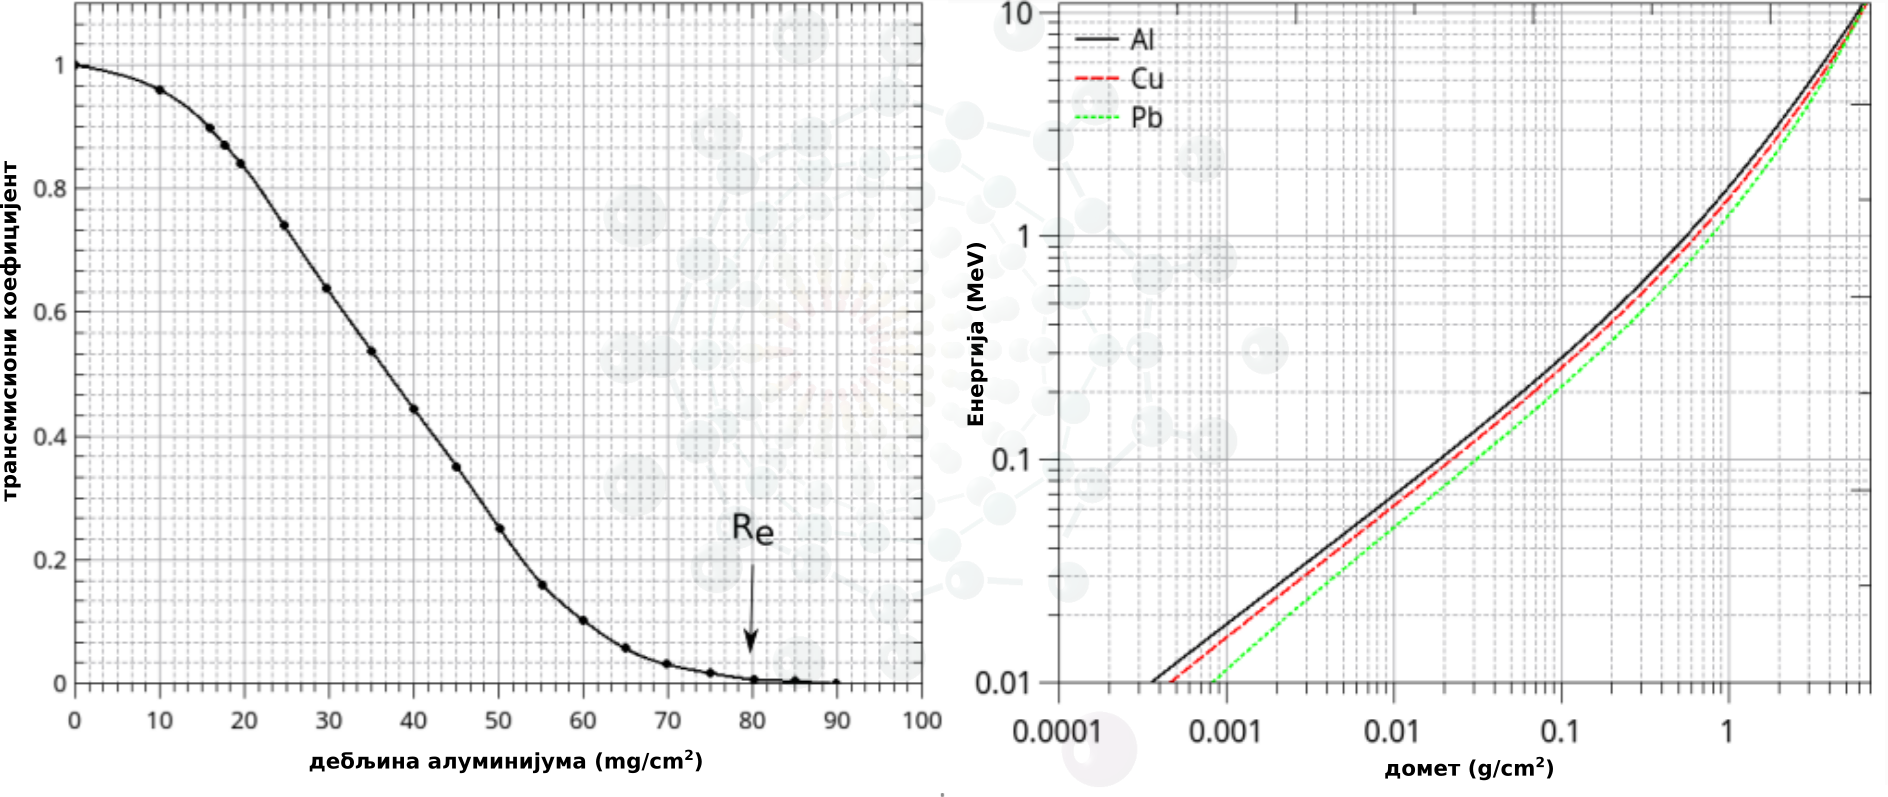 a) Трансмисиона крива за пролаз електрона енергије  250 \hspace{0.2cm} keV кроз алуминијум. б) Зависност екстраполисаног домета електрона од енергије у алуминијуму, бакру и олову.